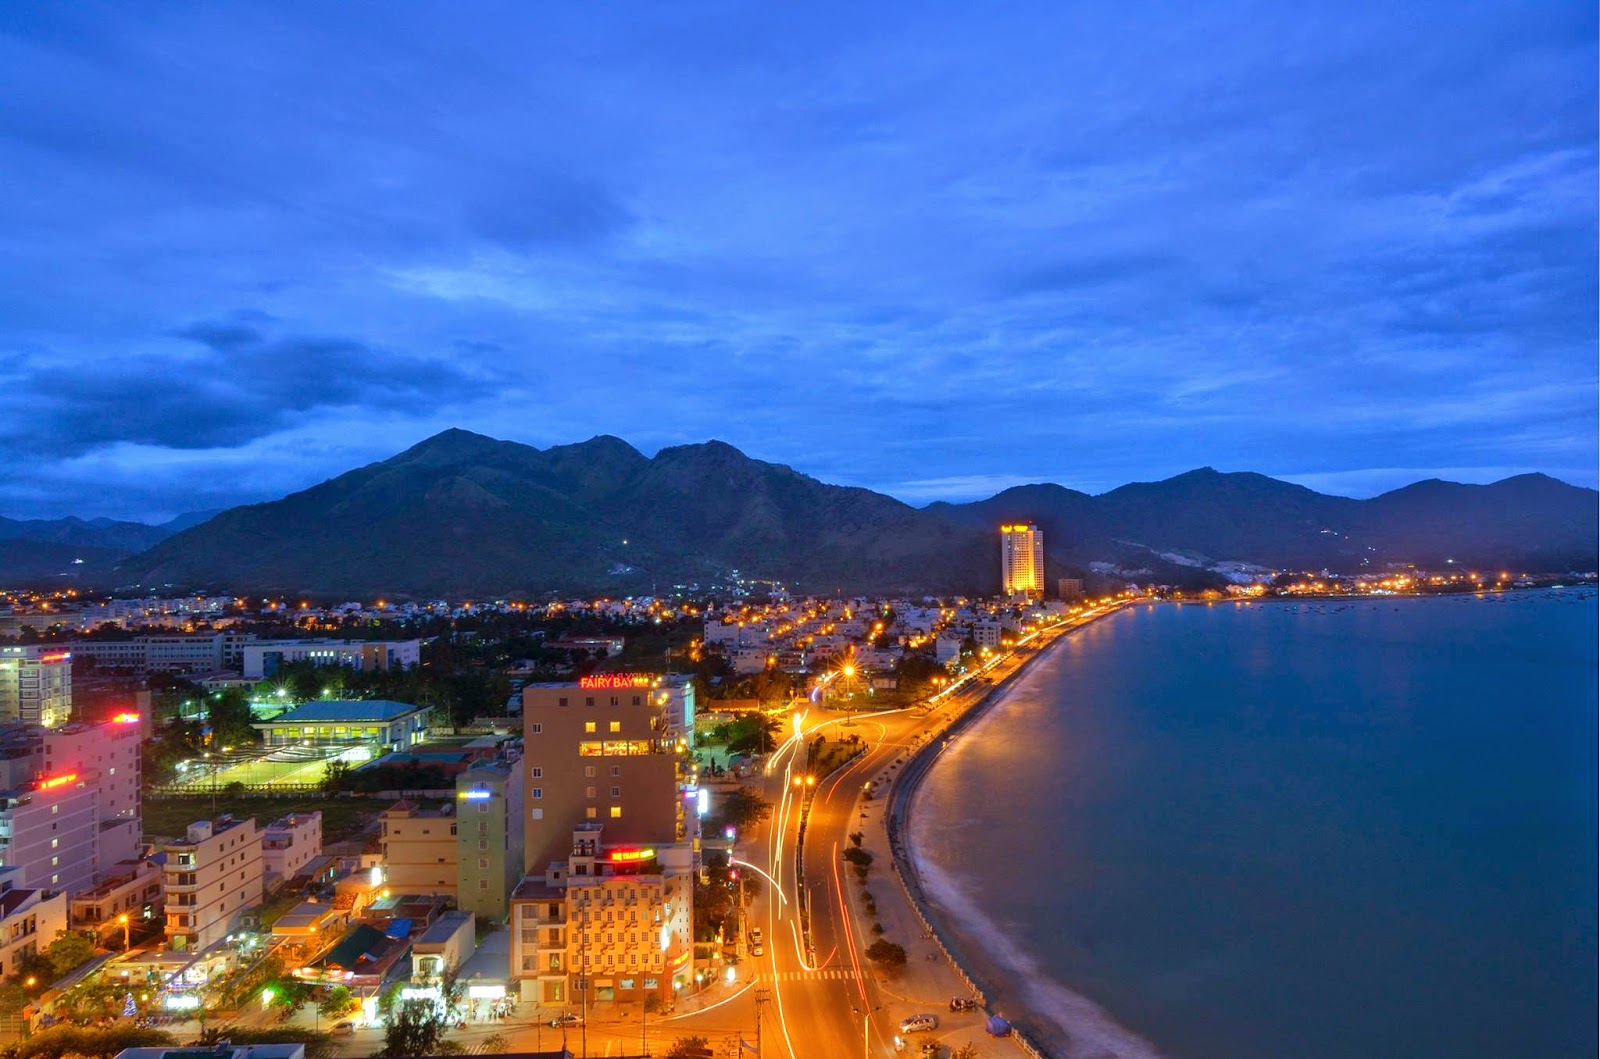 Tổng hợp hình ảnh Nha Trang đẹp nhất – Thành phố biển hấp dẫn khách du lịch - [Kích thước hình ảnh: 1600x1059 px]